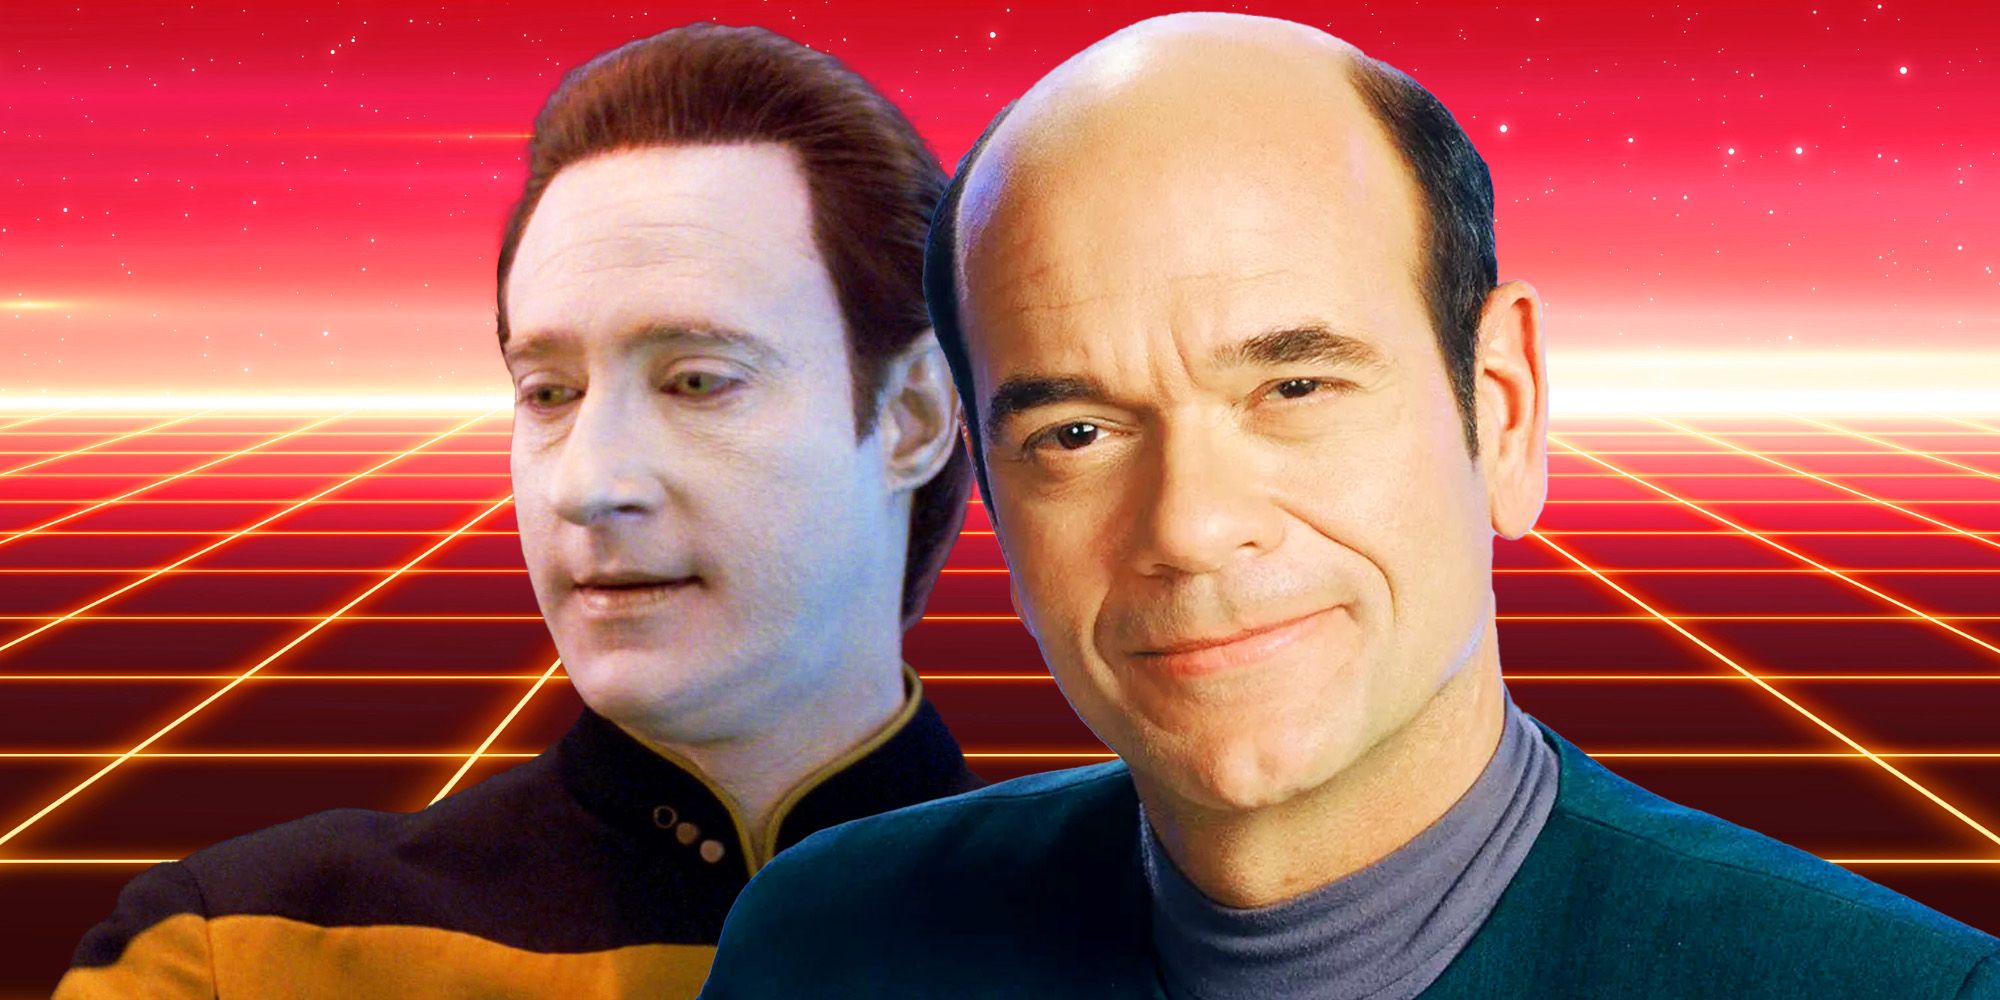 Los datos “nunca podrían” tener romances como Star Trek: el médico de la Voyager, dice Robert Picardo